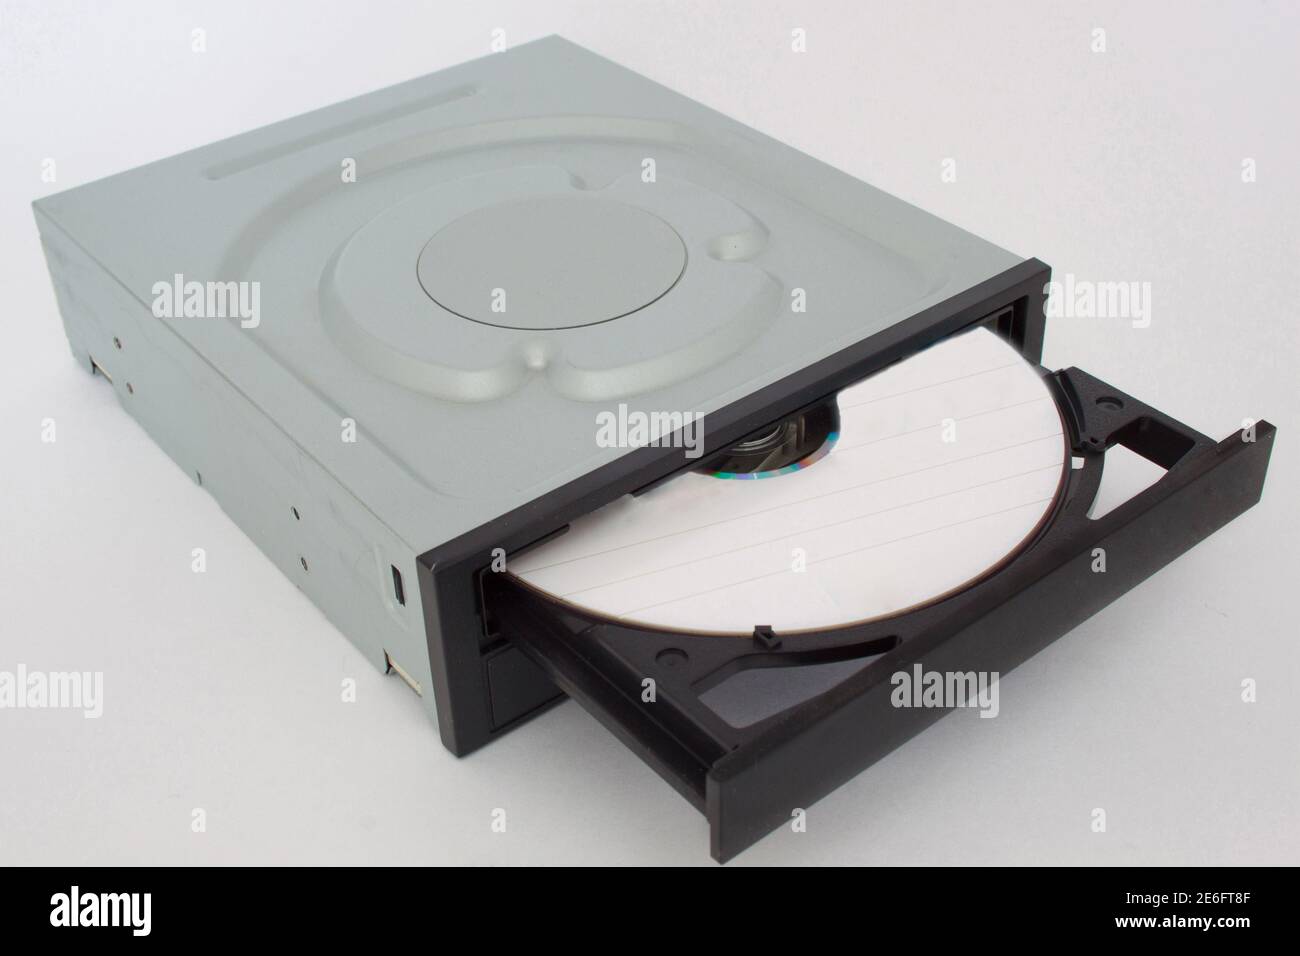 Lecteur CD - DVD ouvert avec un capuchon noir et un disque à l'intérieur.  Isolatedon sur fond blanc Photo Stock - Alamy